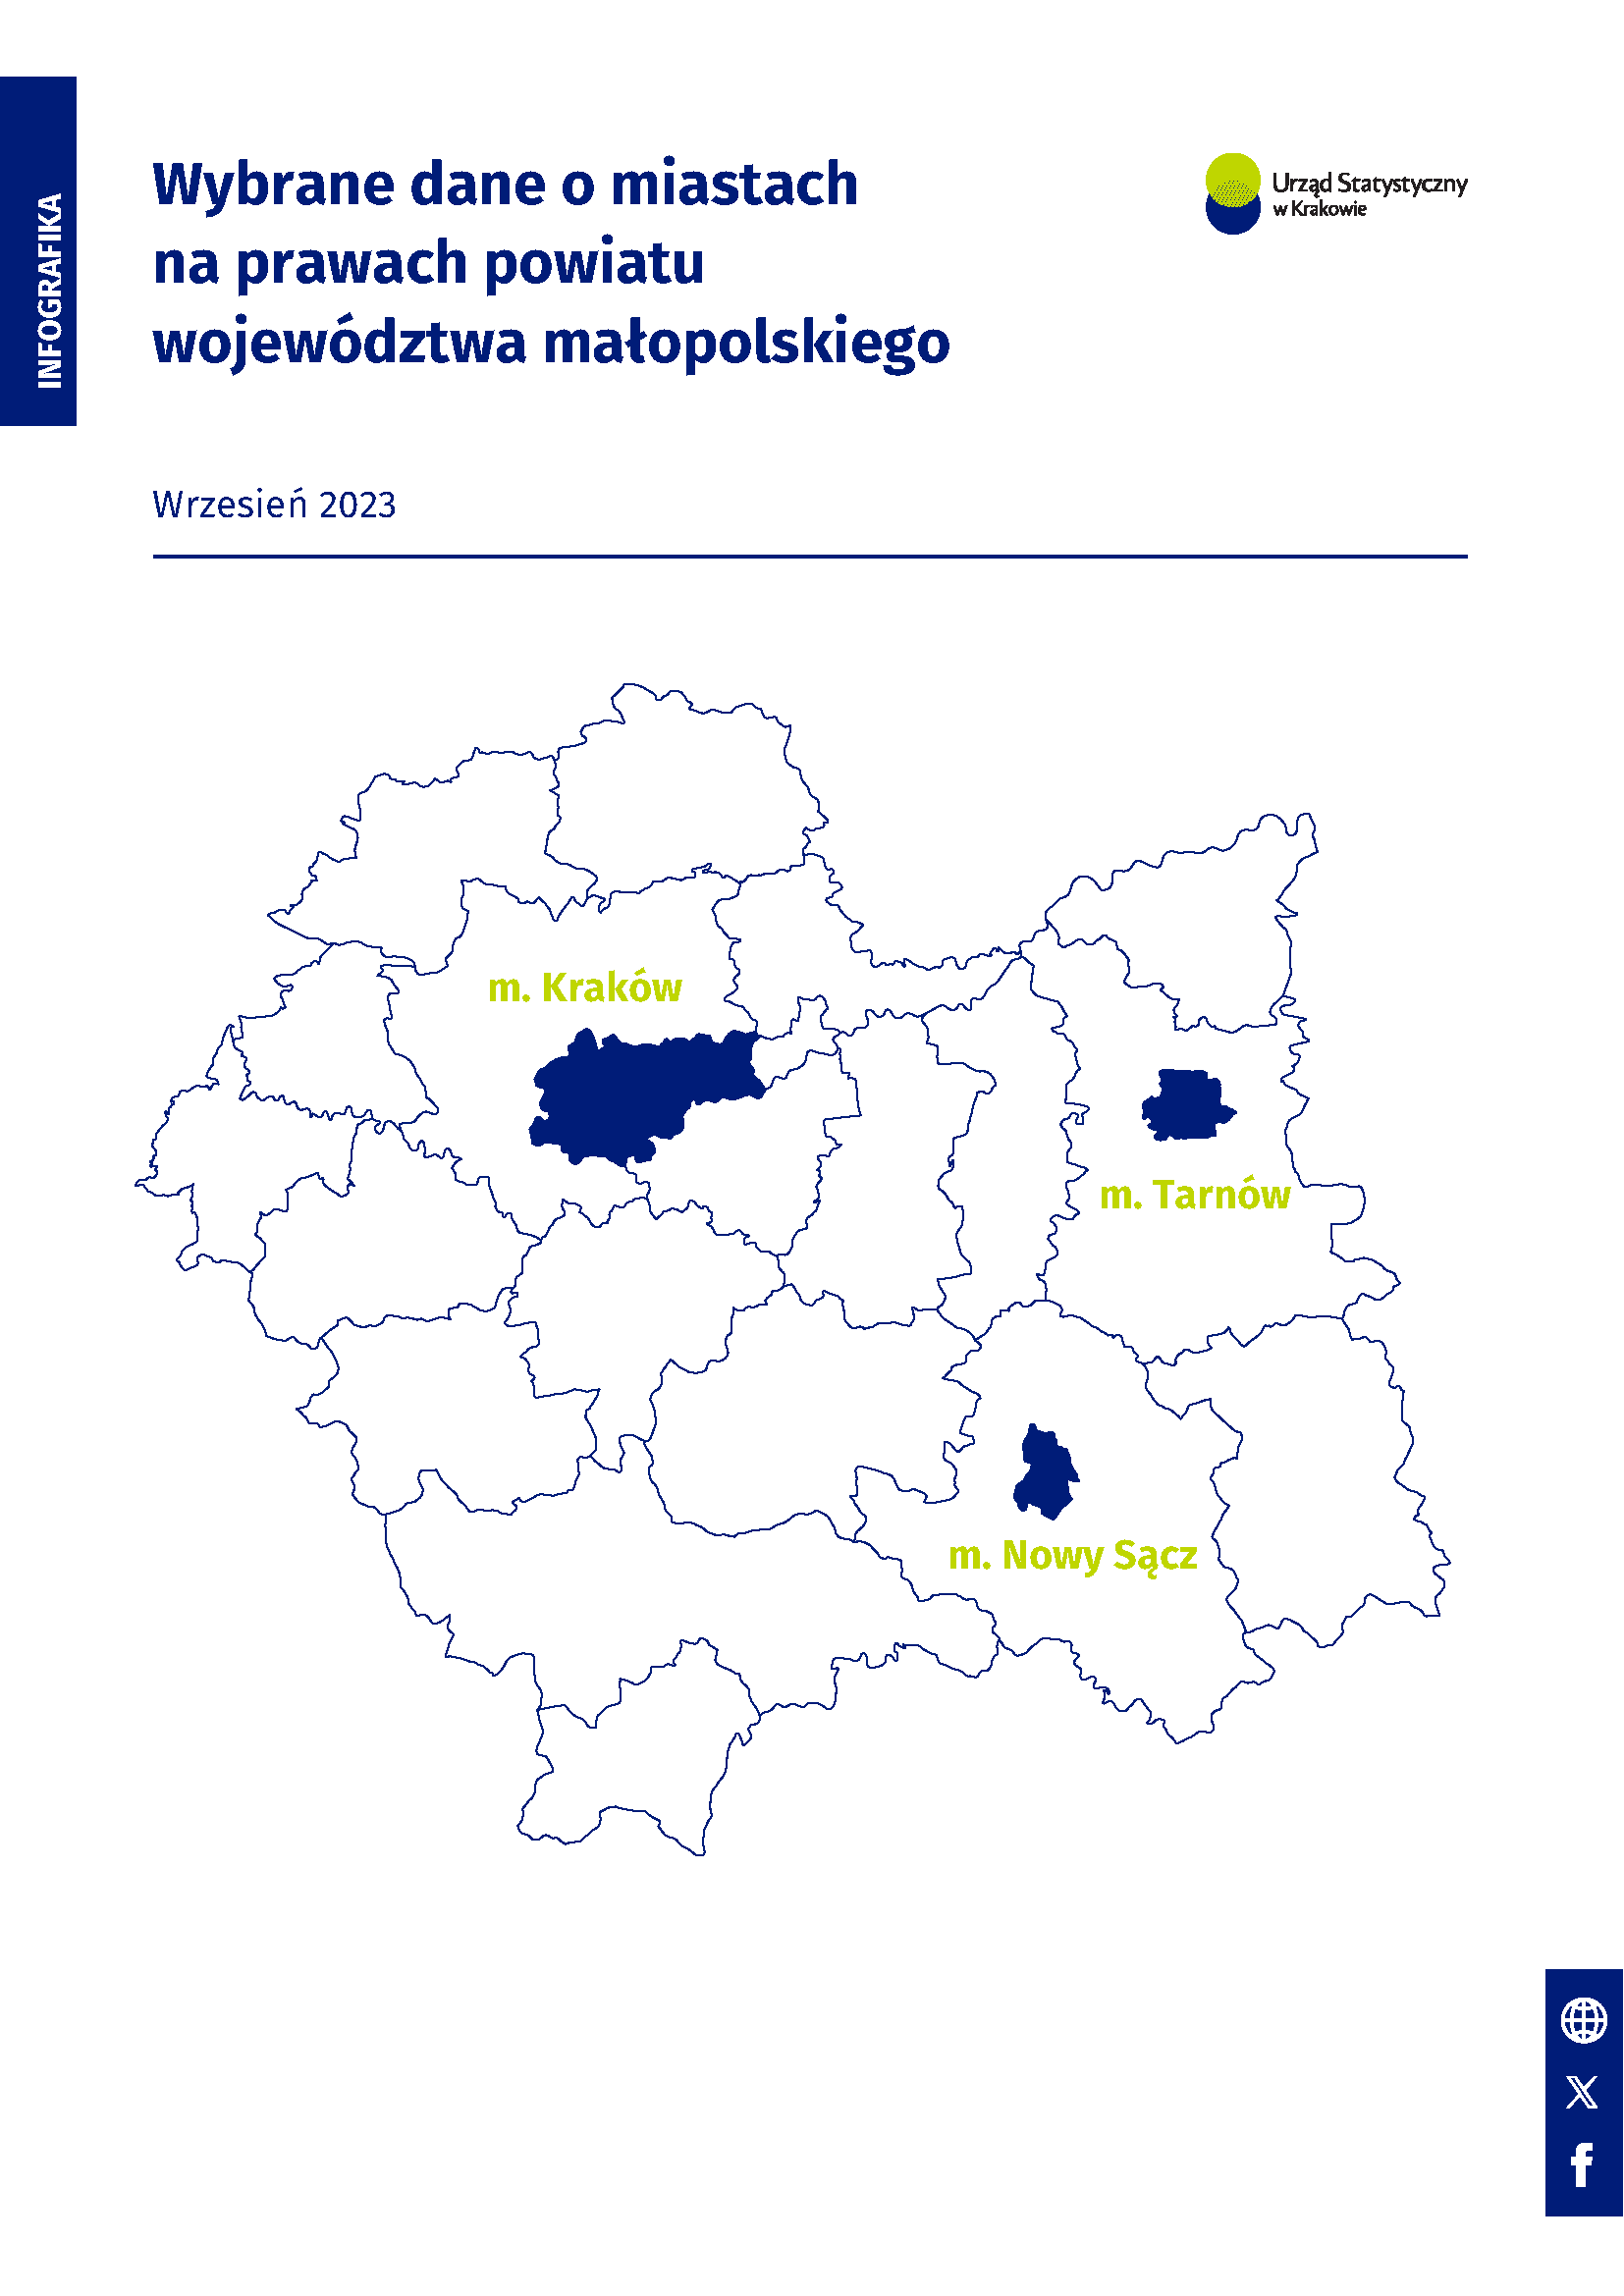 Wybrane dane o miastach na prawach powiatu województwa małopolskiego - wrzesień 2023 r.